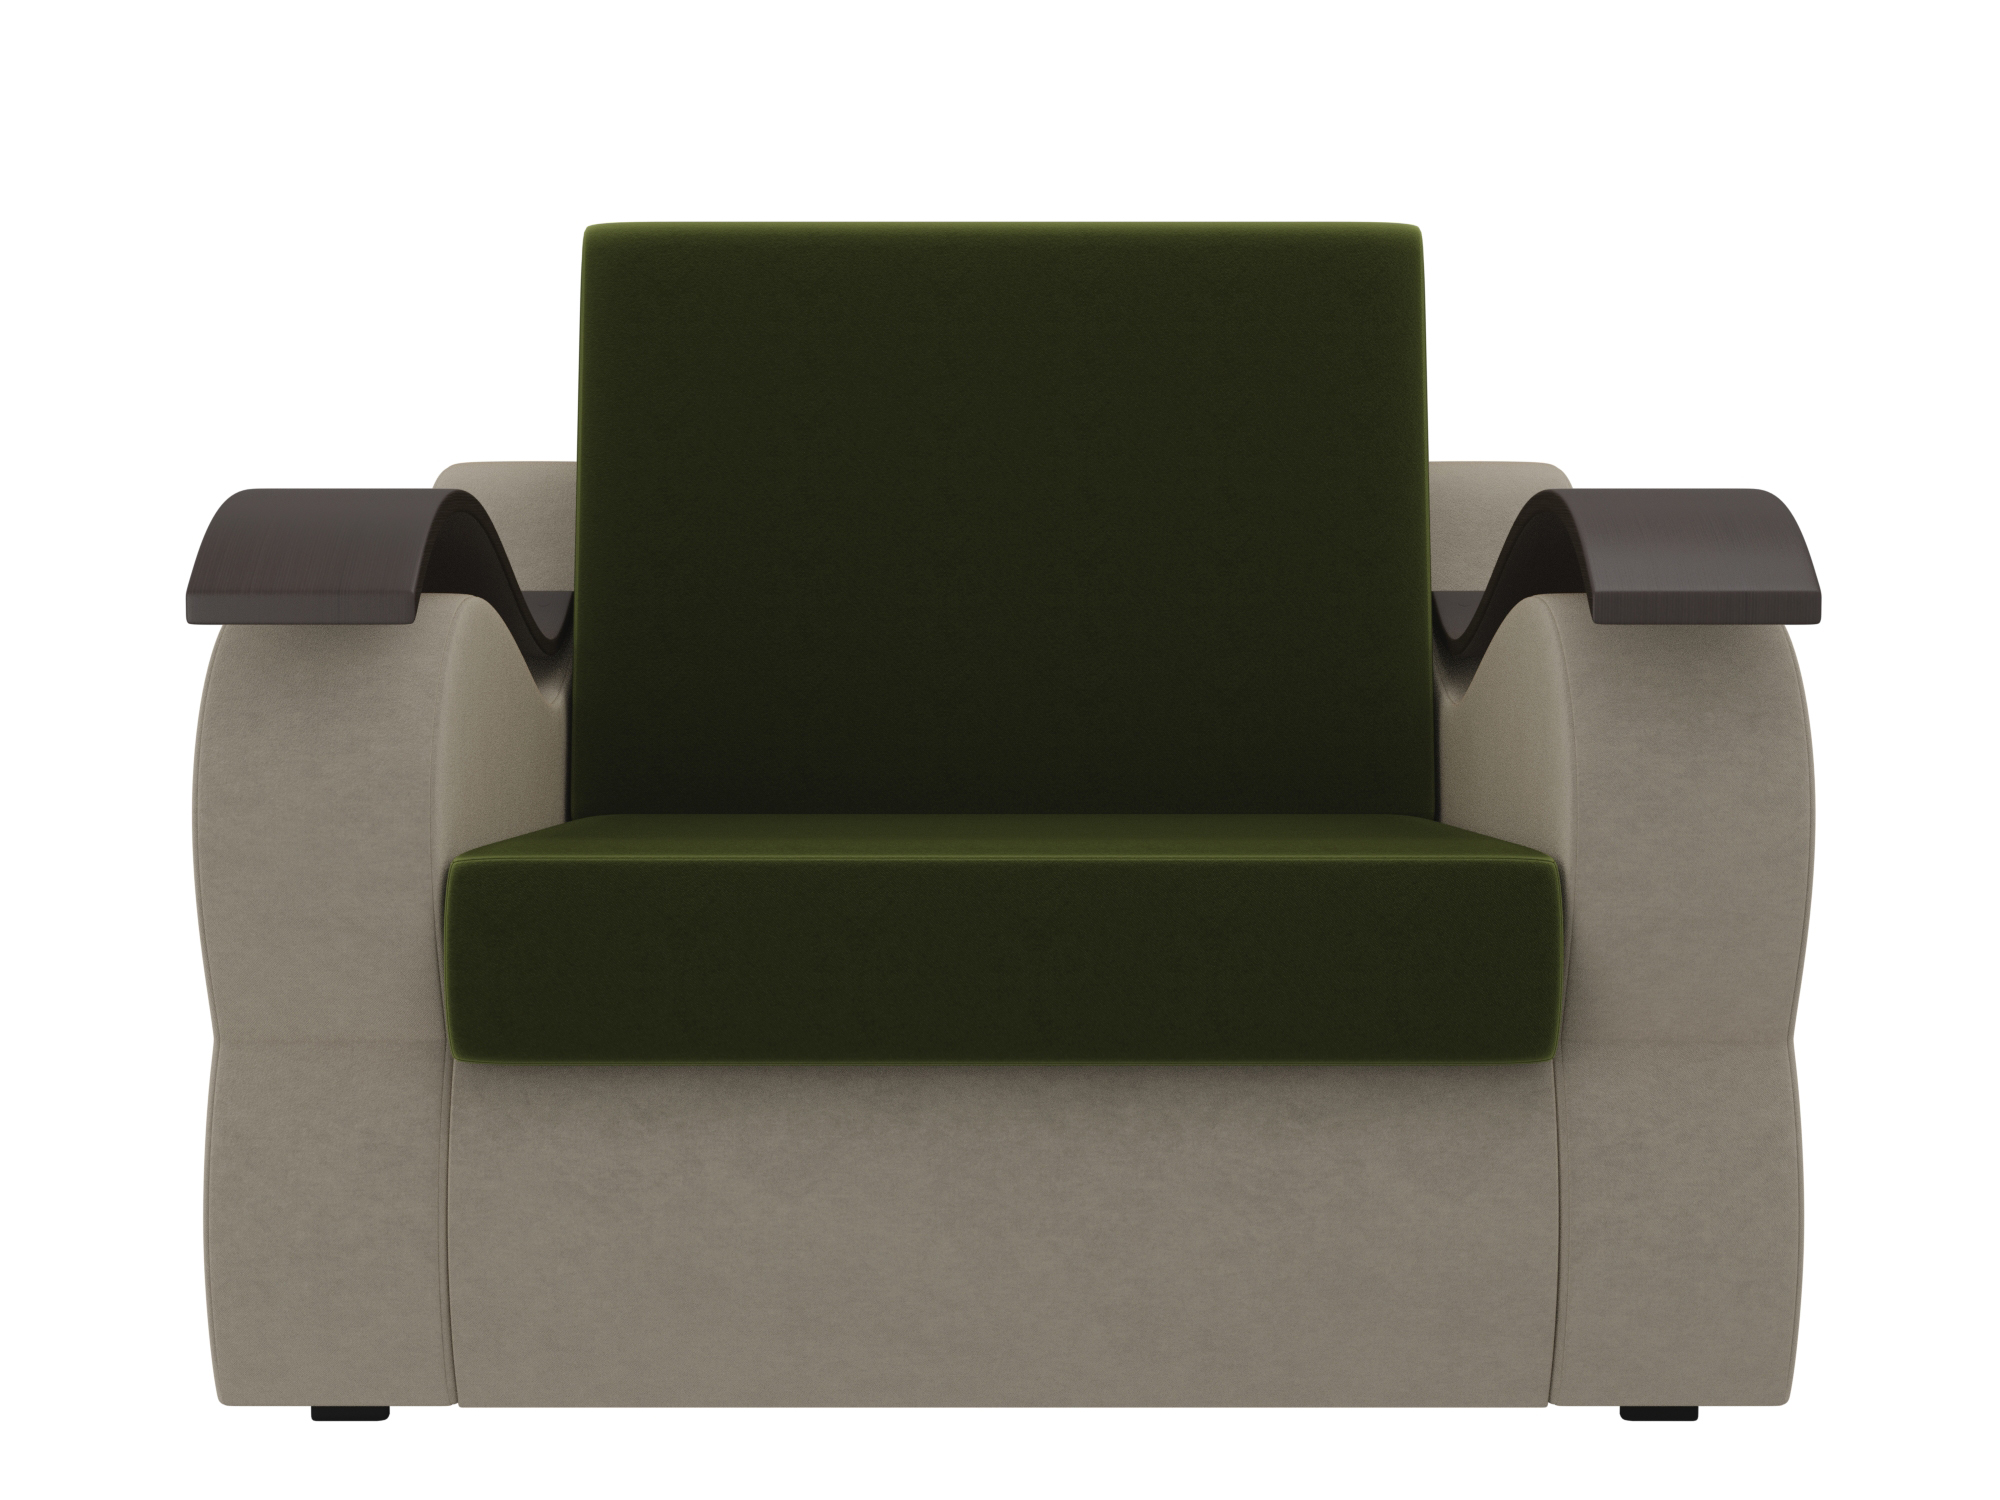 кресло меркурий 80х190 mebelvia зеленый бежевый микровельвет дсп лдсп Кресло Меркурий (60х190) MebelVia Зеленый, Бежевый, Микровельвет, ДСП, ЛДСП